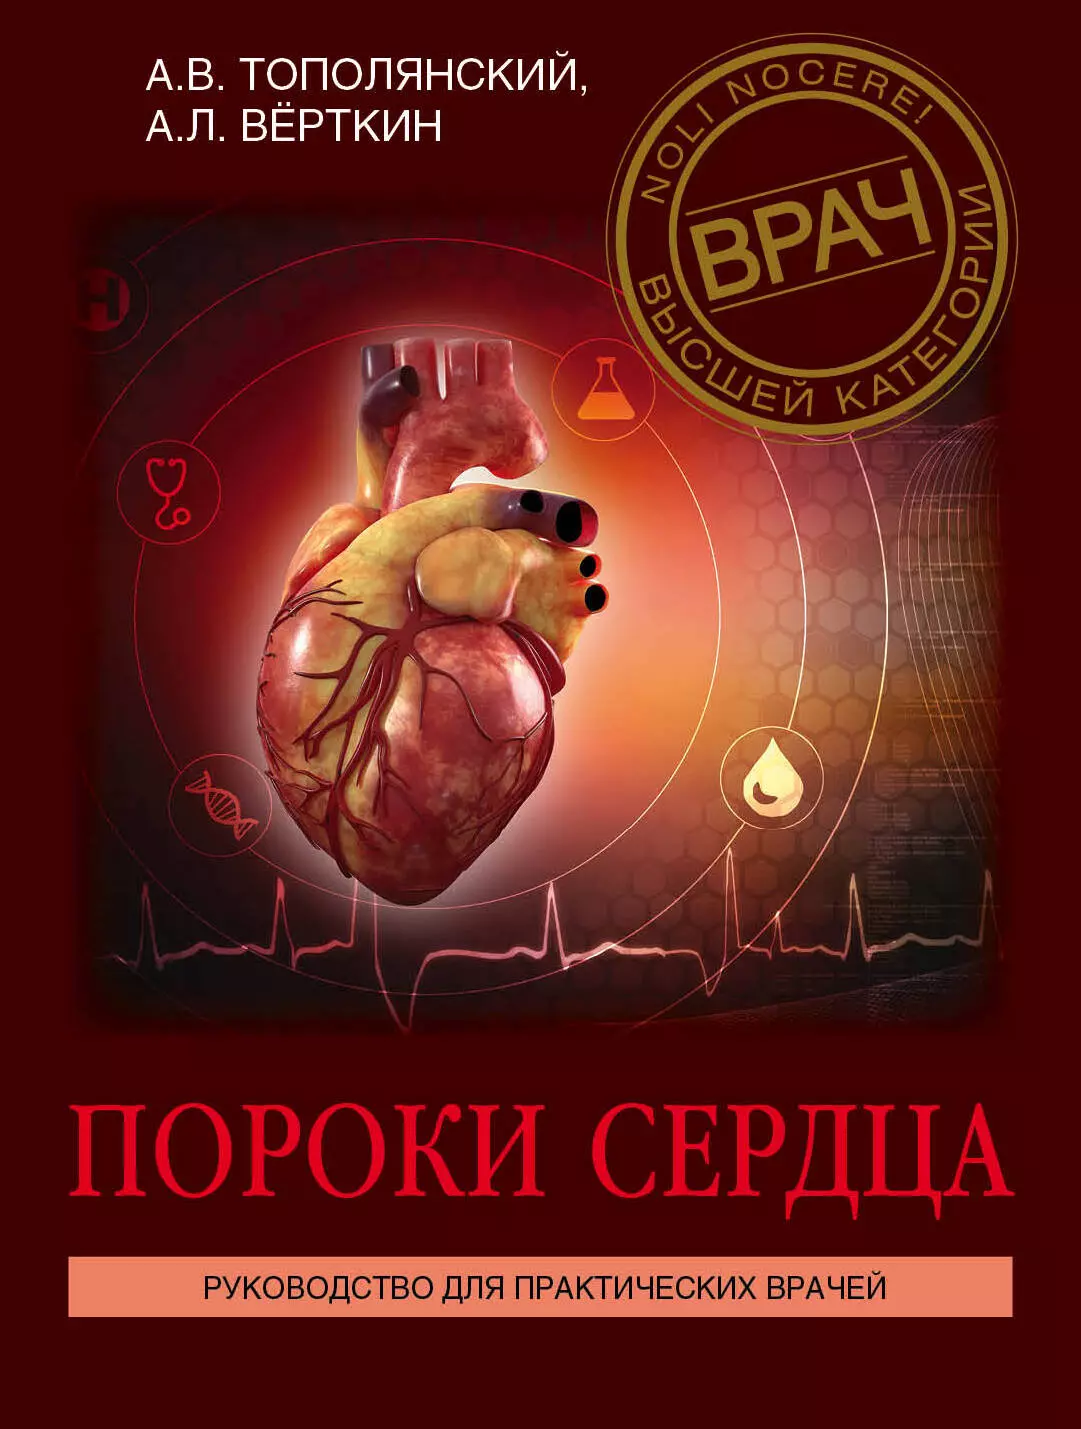 Верткин Аркадий Львович - Пороки сердца. Руководство для практических врачей